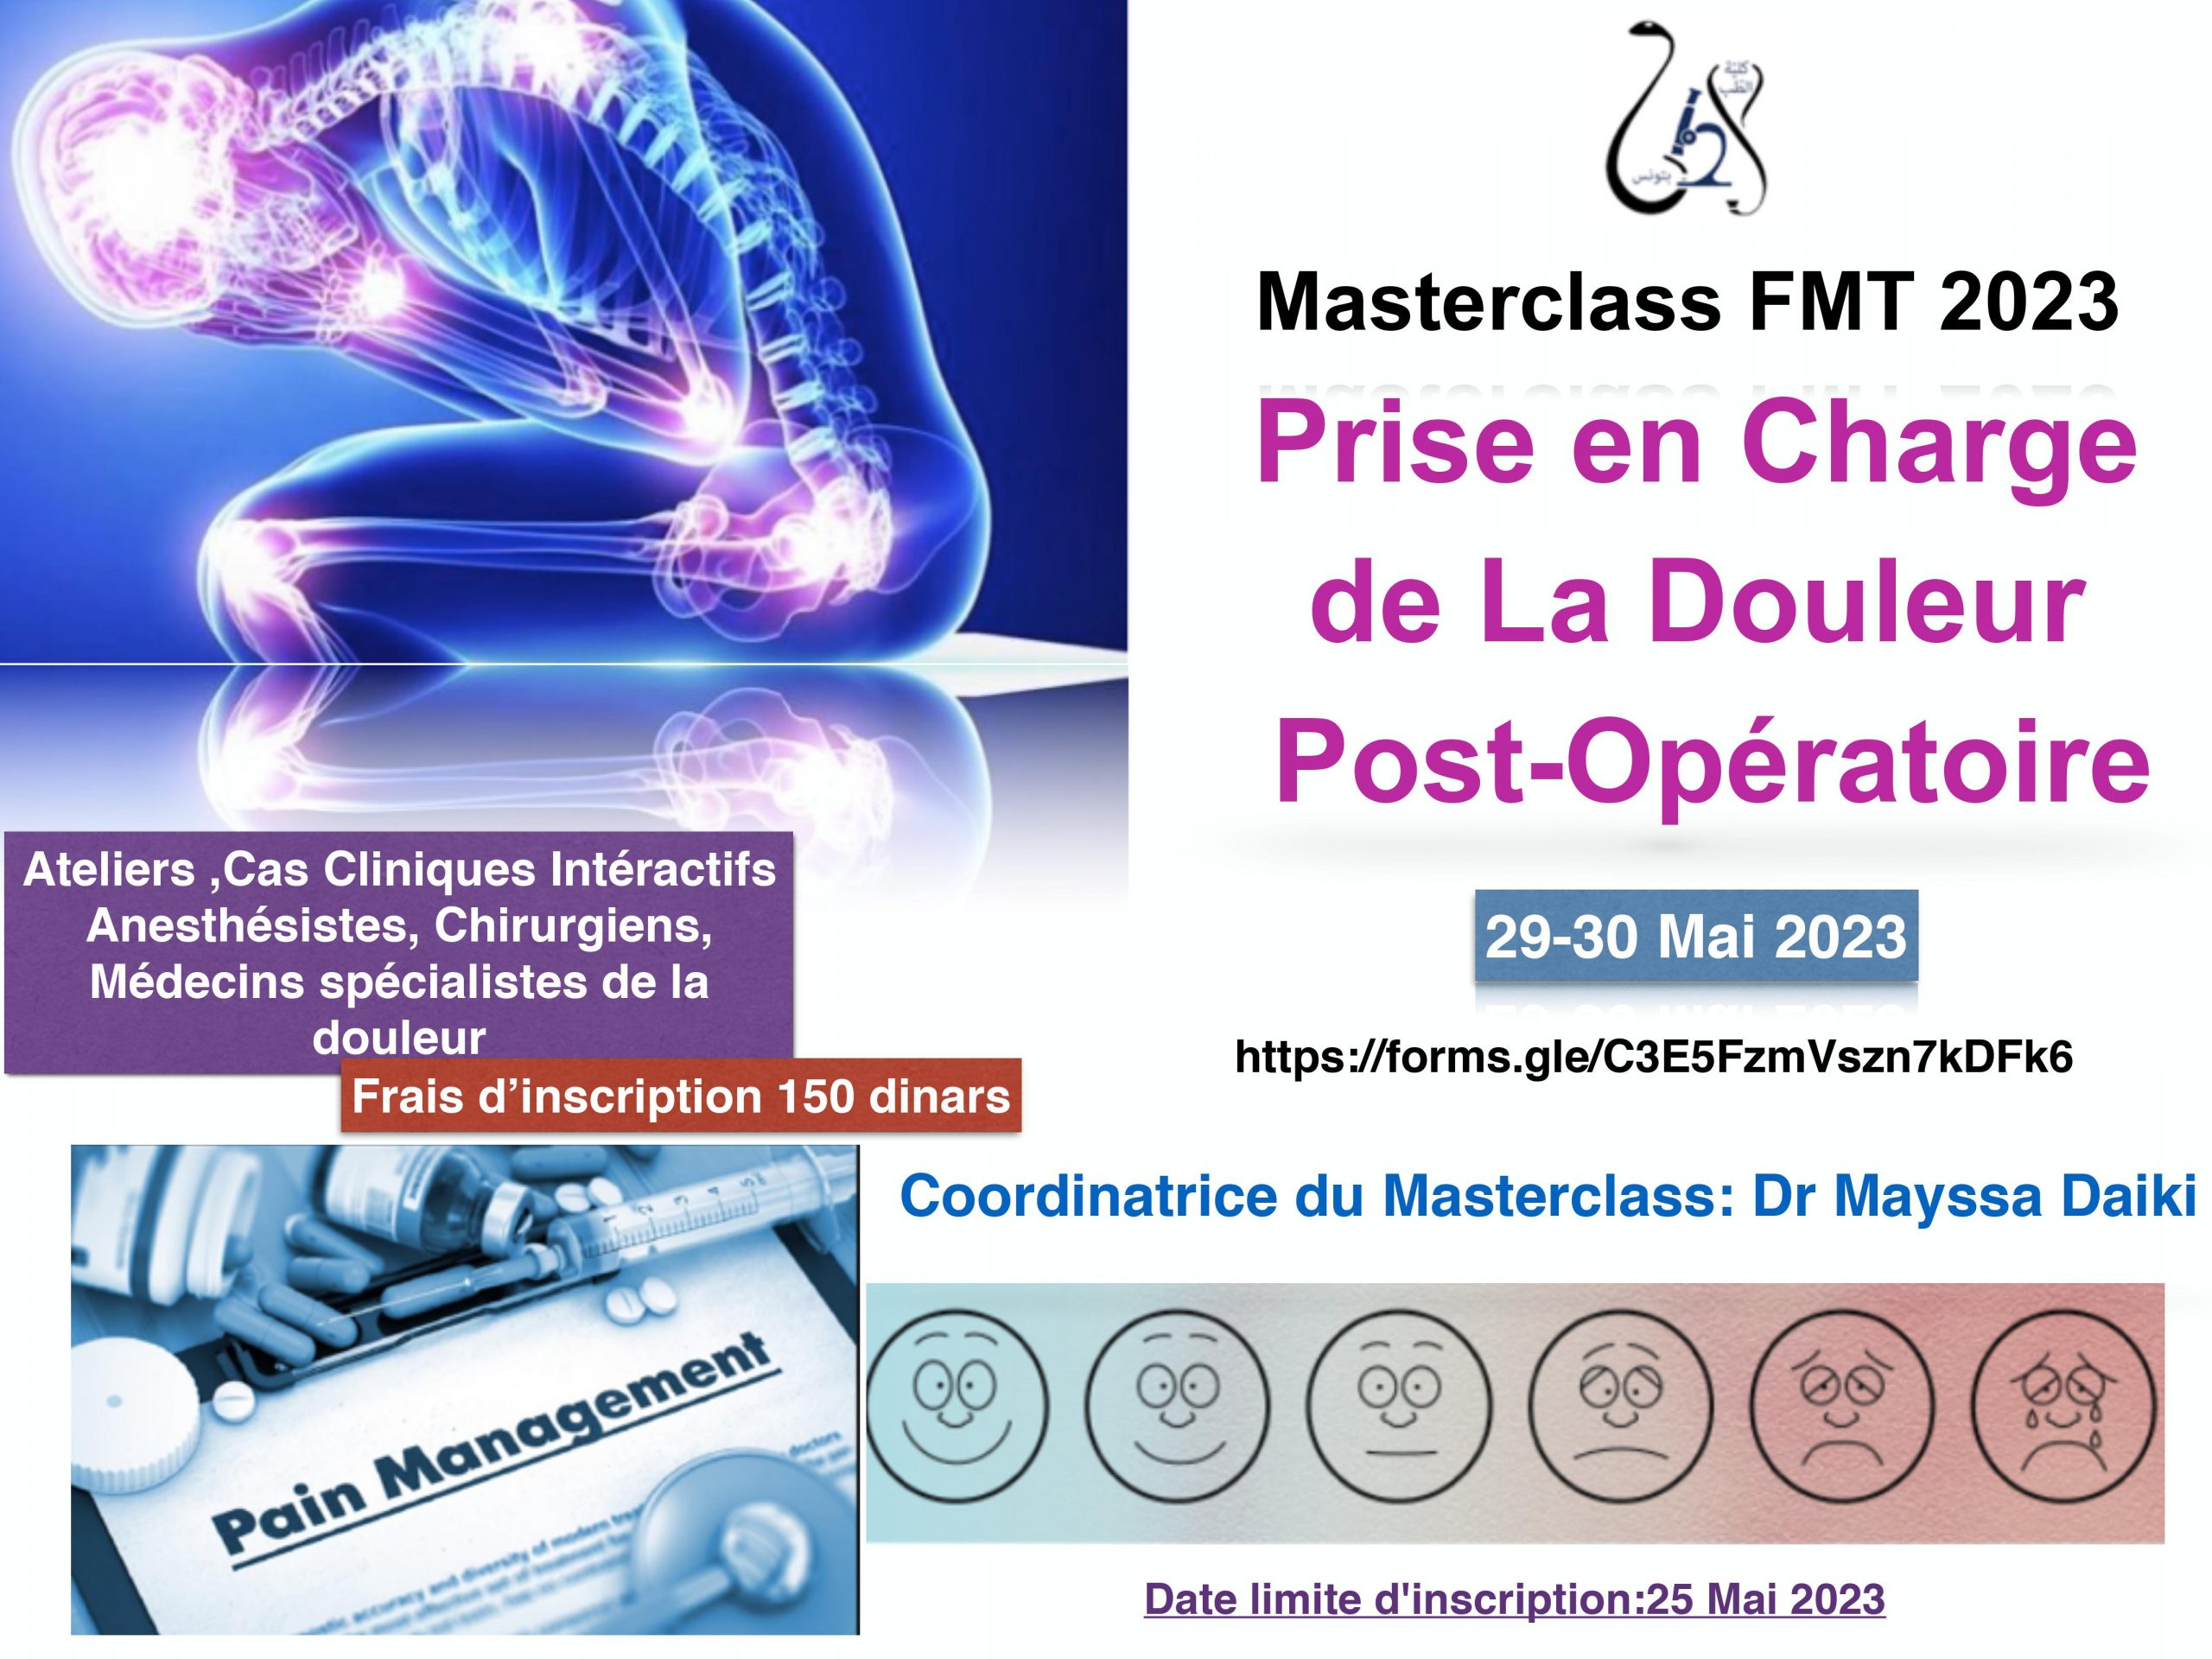 Masterclass : Prise en charge de la douleur en post-opératoire - FMT